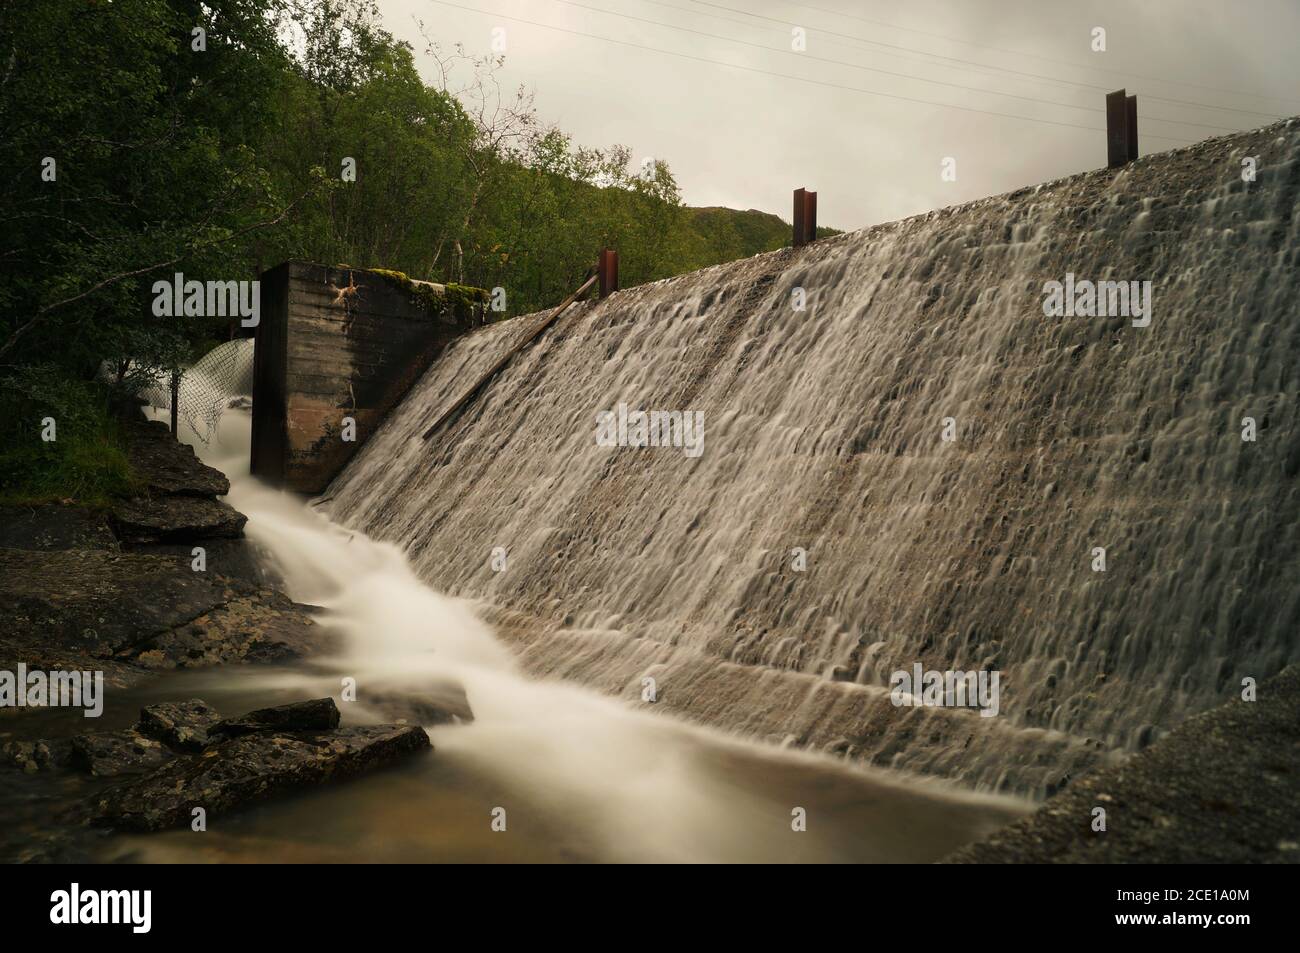 Dam with running water Stock Photo